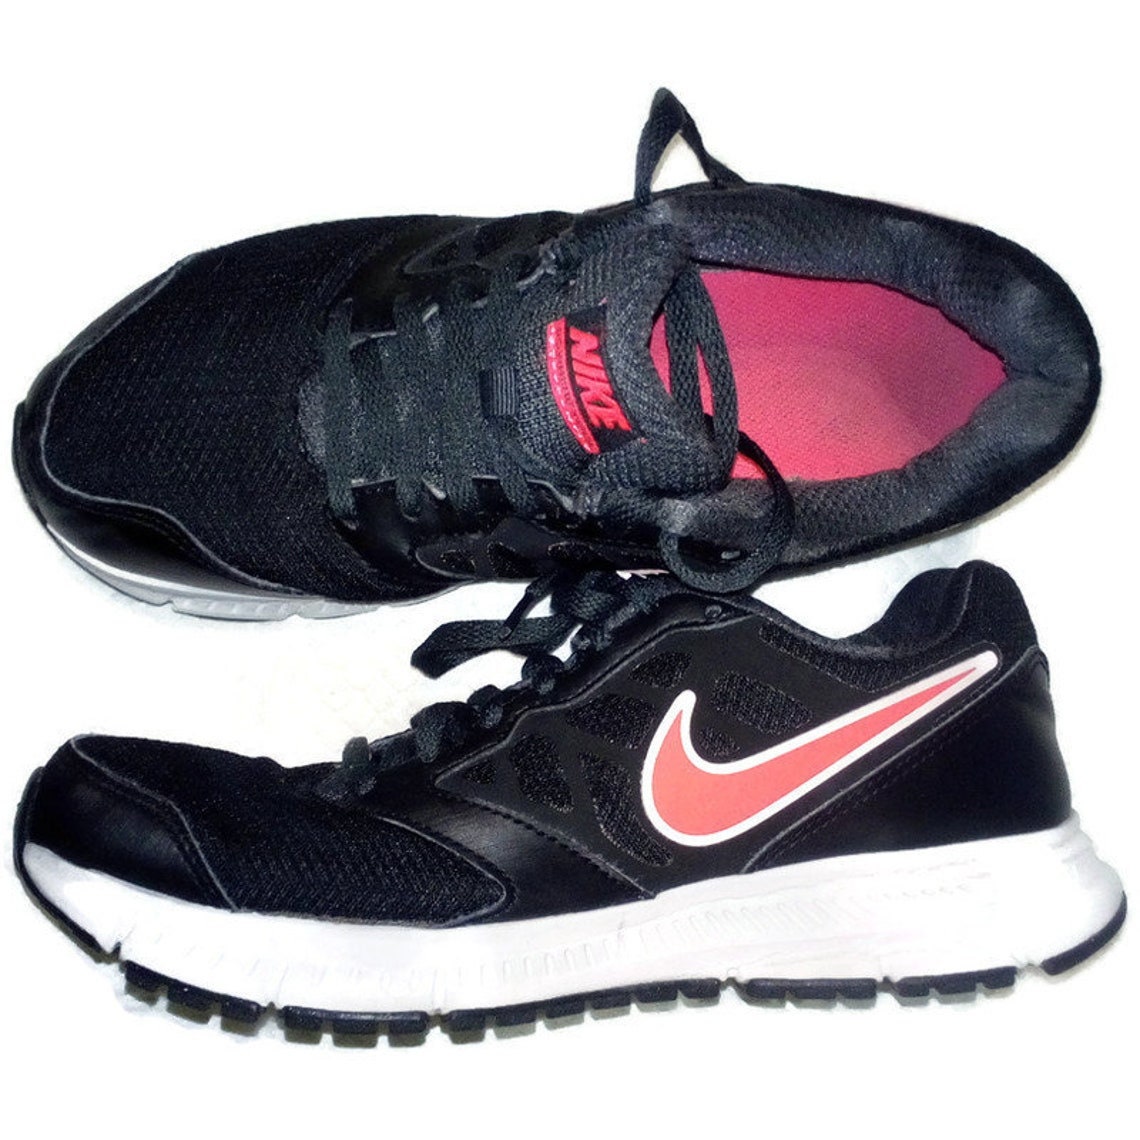 Nike Sneakers Vintage Running Women's - Etsy